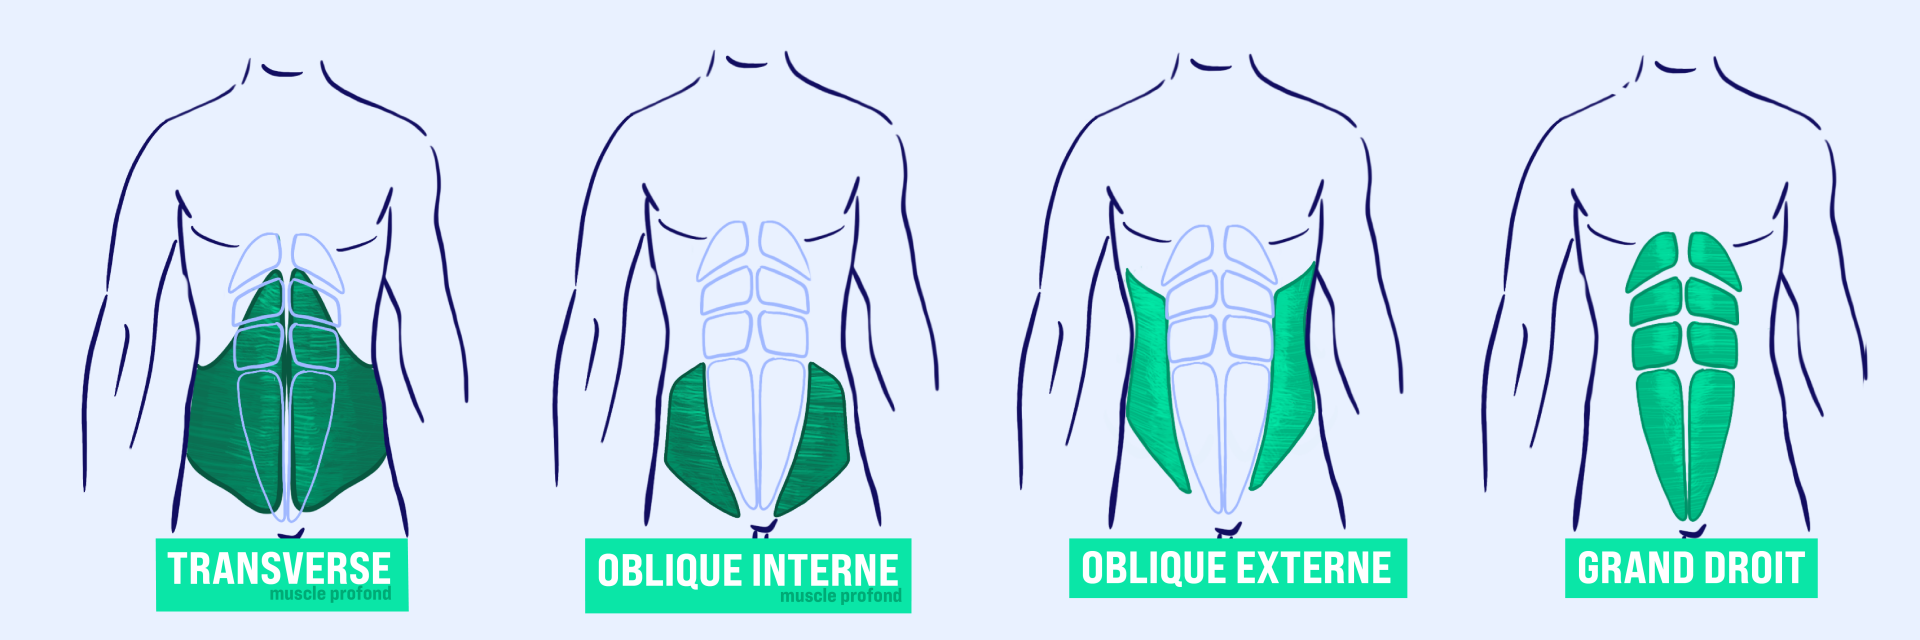 10 exercices pour se muscler les abdominaux